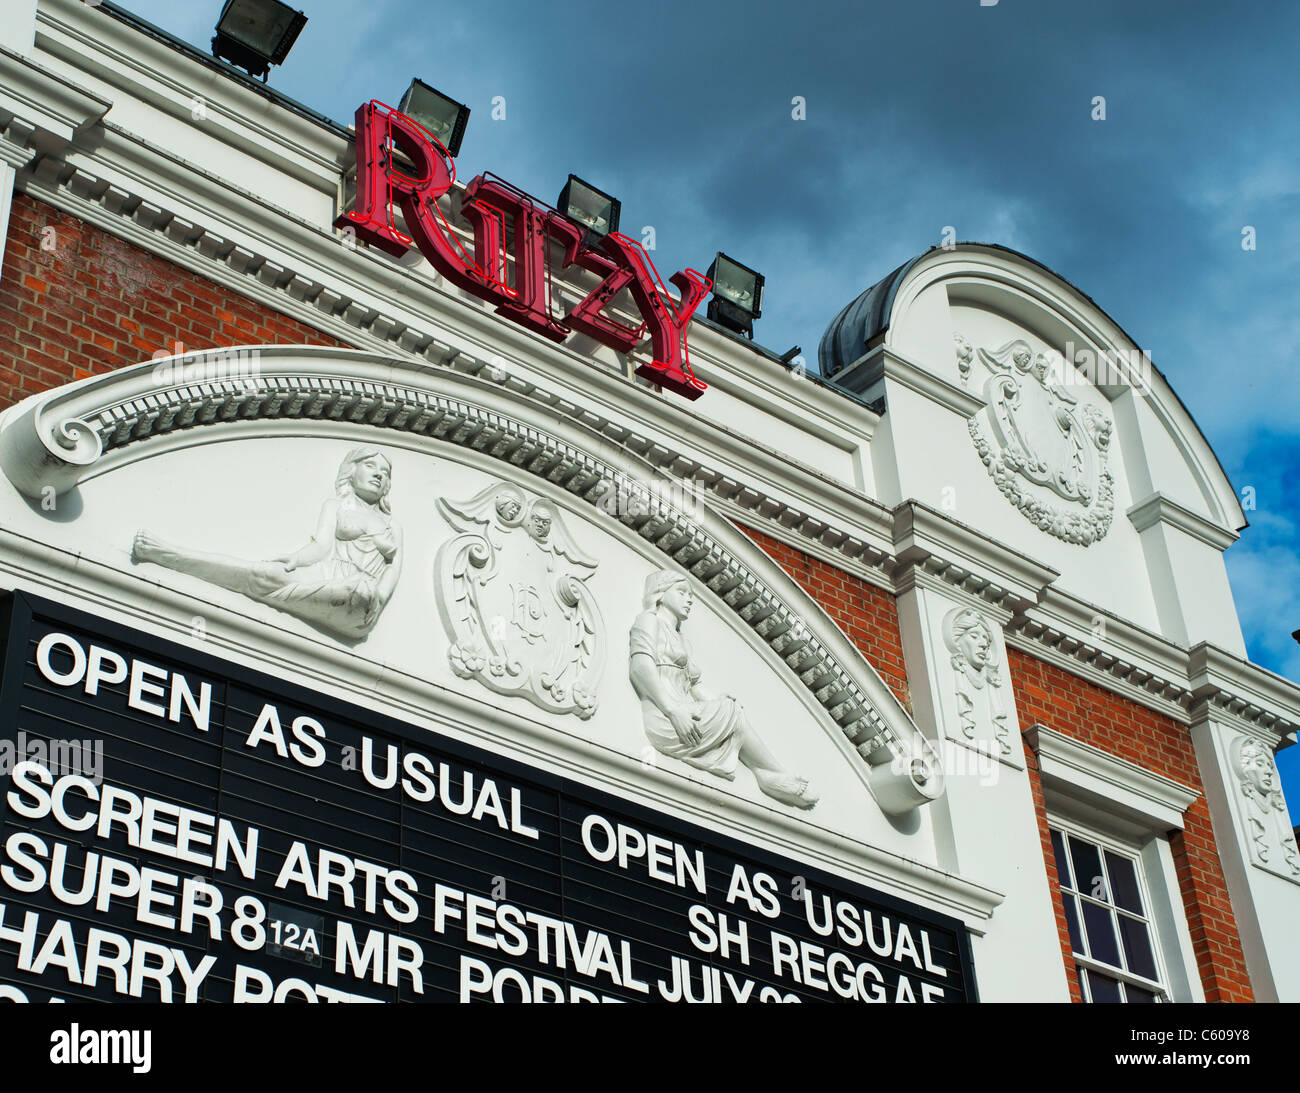 Ritzy Cinema, Brixton 'Abrir como de costumbre" durante los disturbios de Londres, en agosto de 2011. Foto de stock